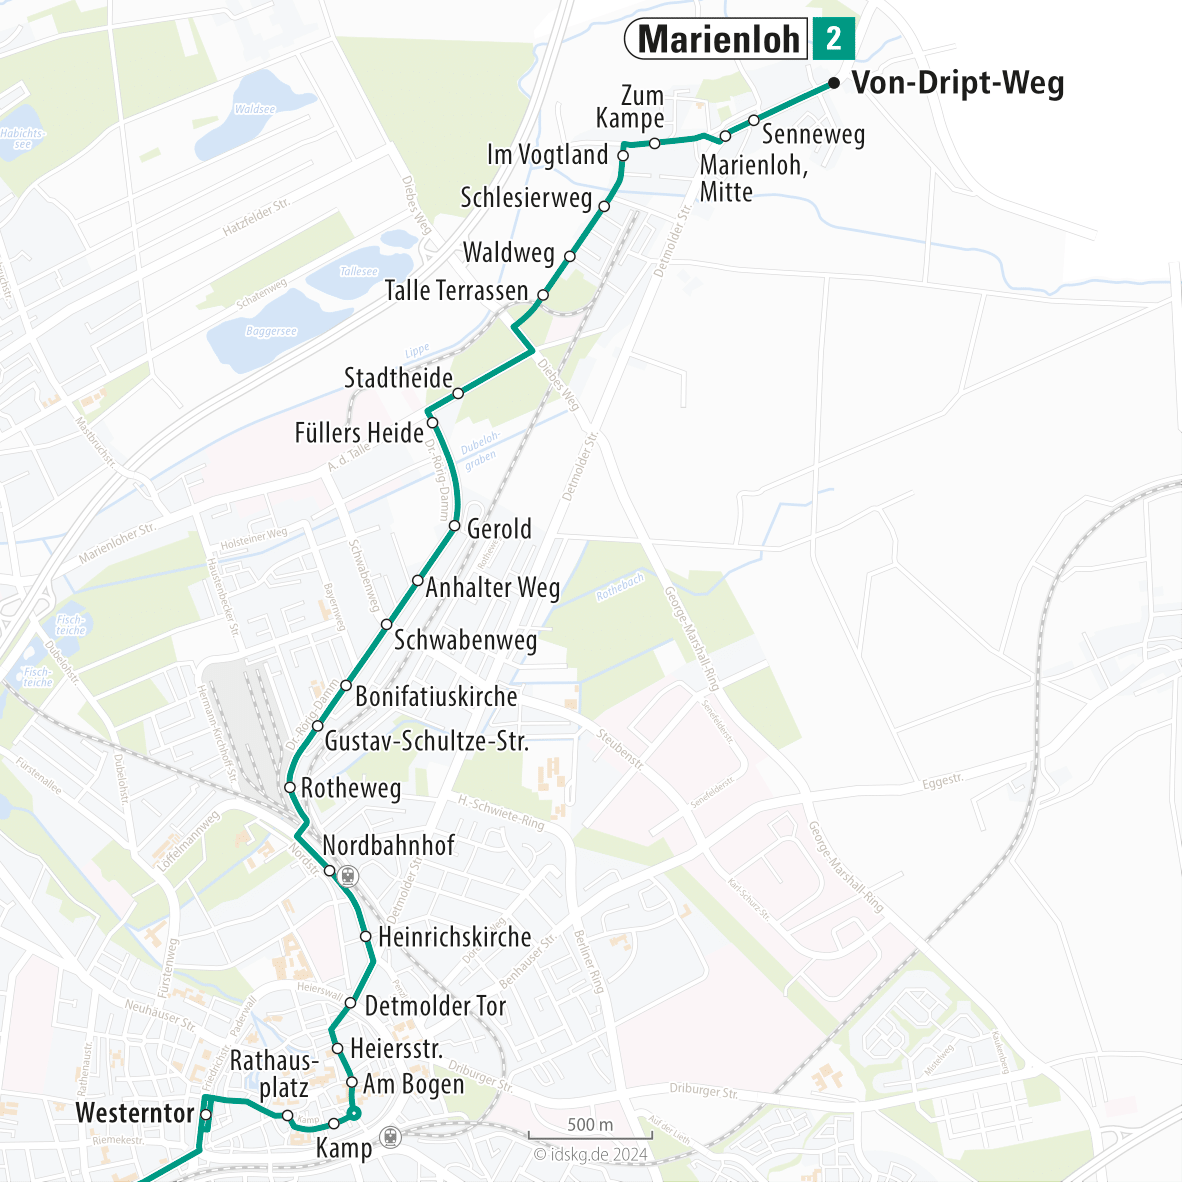 Kartenausschnitt der Linie 2 Westerntor bis Marienloh 15x15